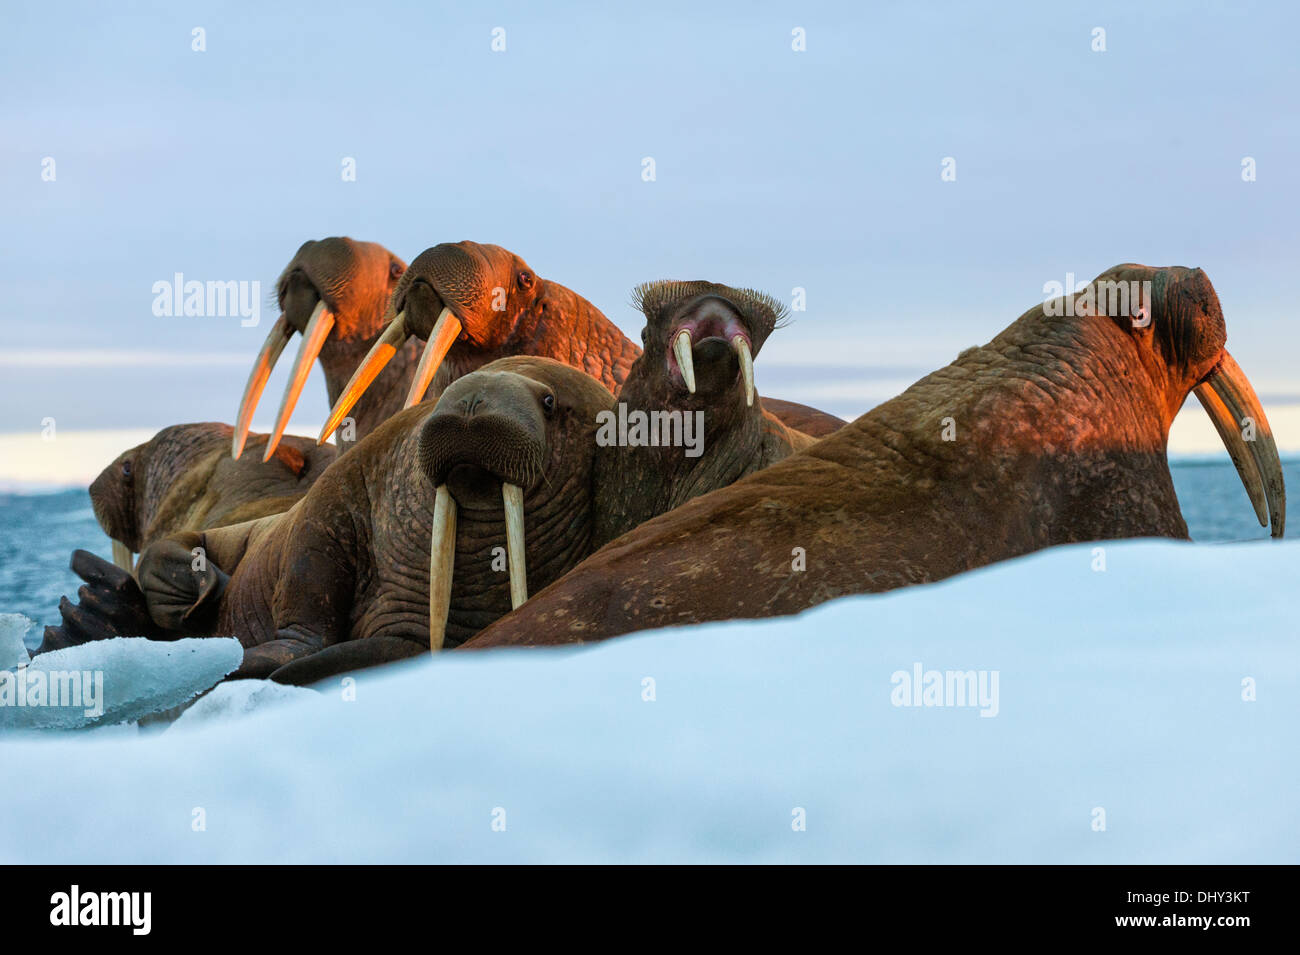 Groupe de morse (Odobenus rosmarus), l'île Wrangel, Chuckchi Mer, Tchoukotka, Extrême-Orient russe Banque D'Images